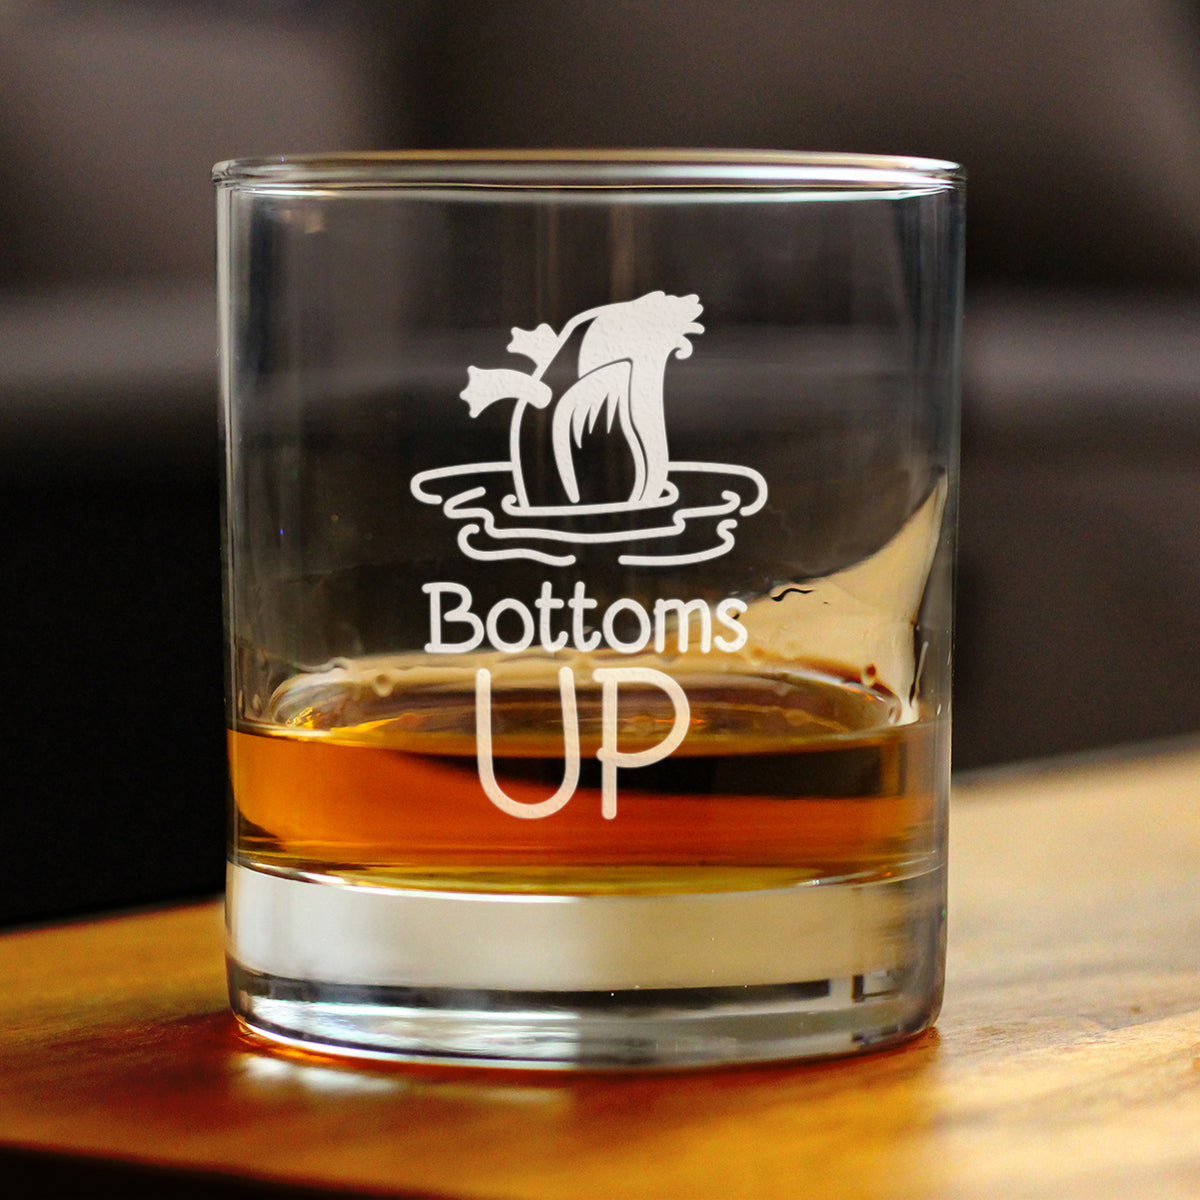 Bottoms Up - 10 Ounce Rocks Glass